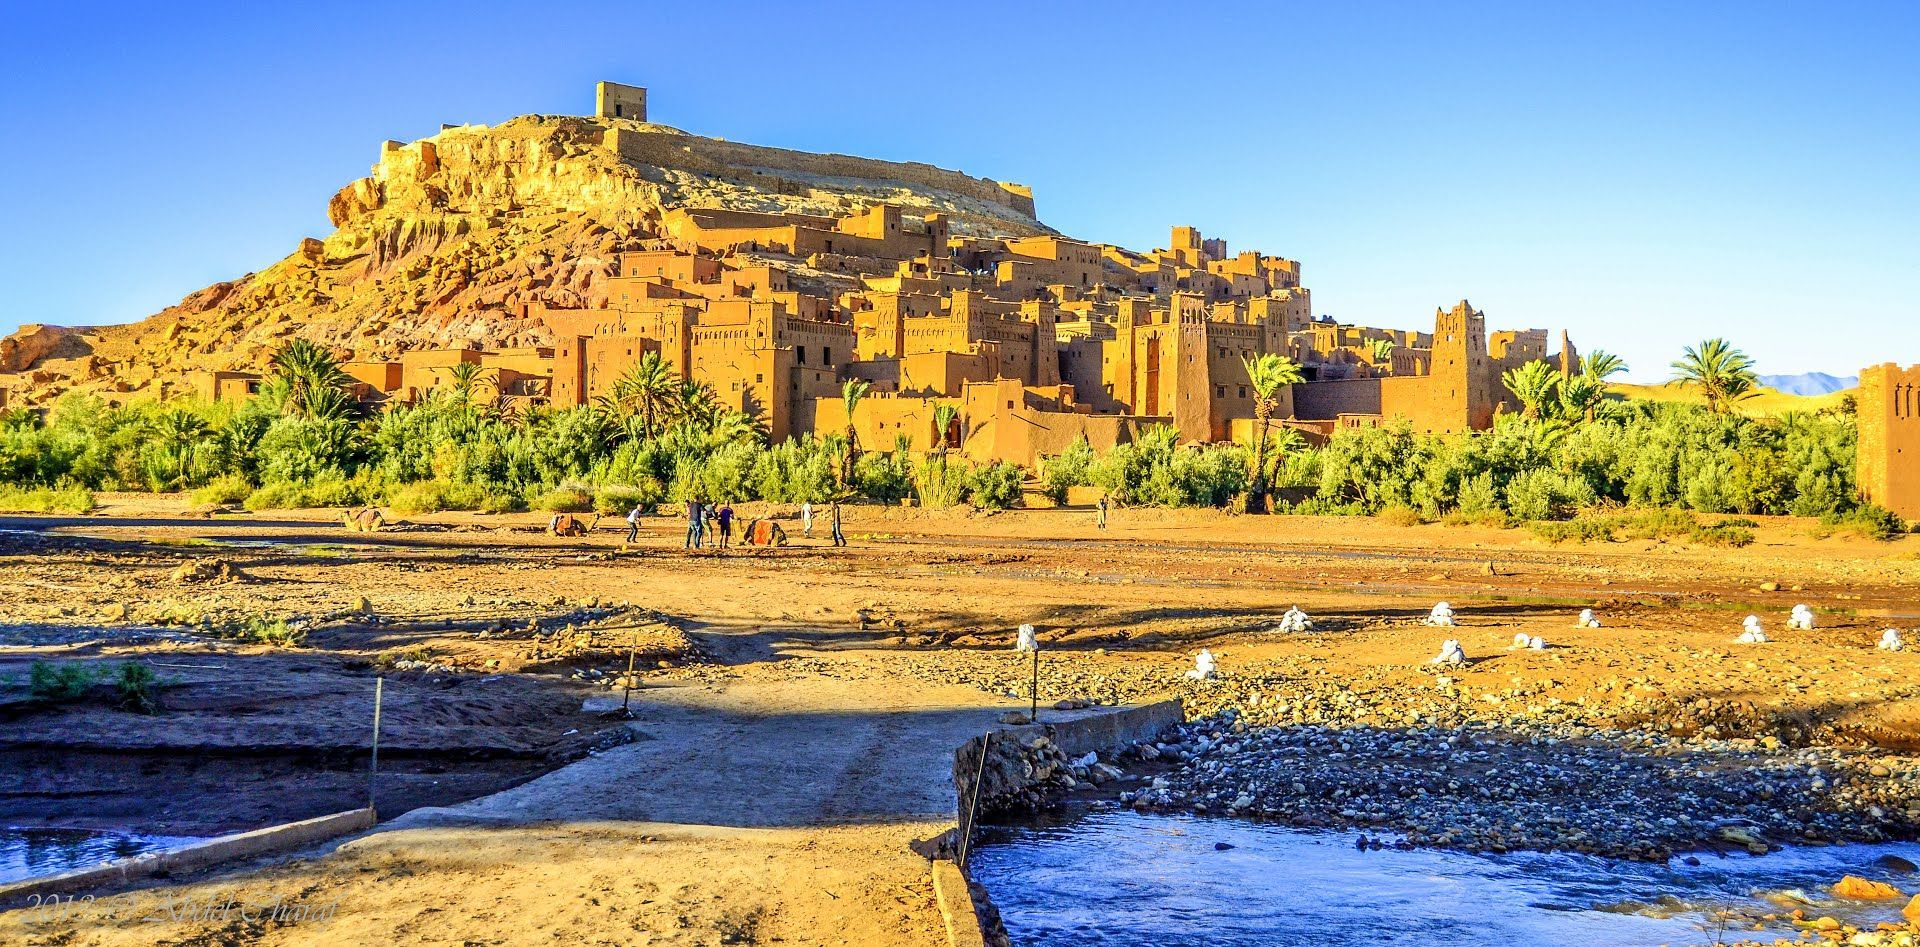 Día 6 · De Ouarzazate a Marrakech · Estudios de cine &Ruta de las Kasbash · Desayuno